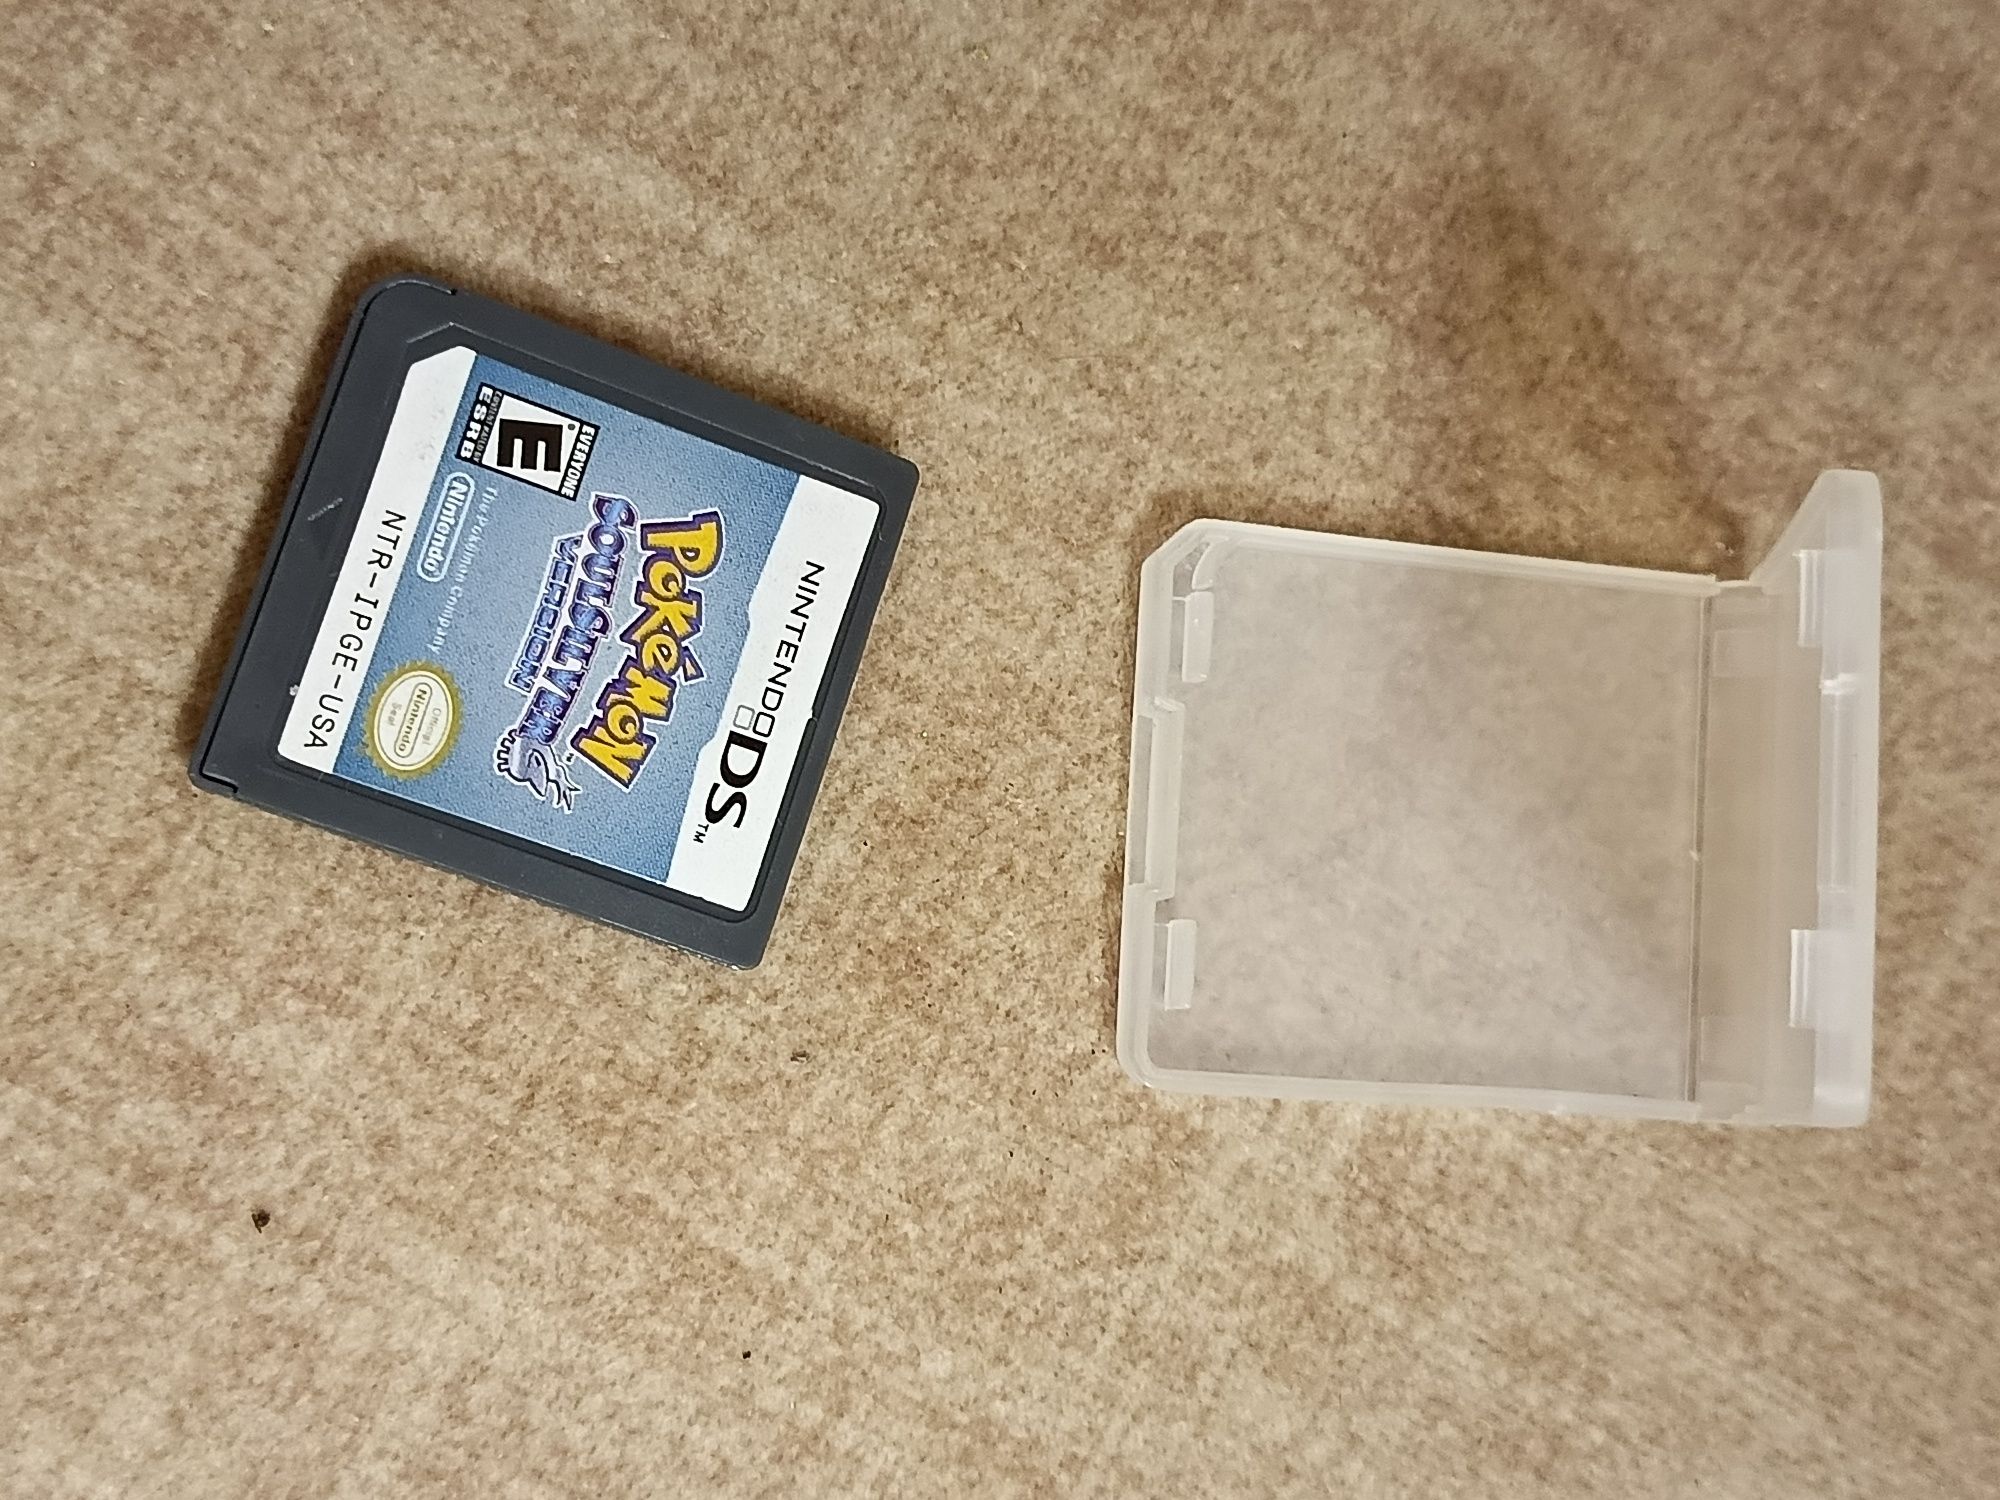 За2. Nintendo ds, Pokémon diamond version, Pokémon soul silver version